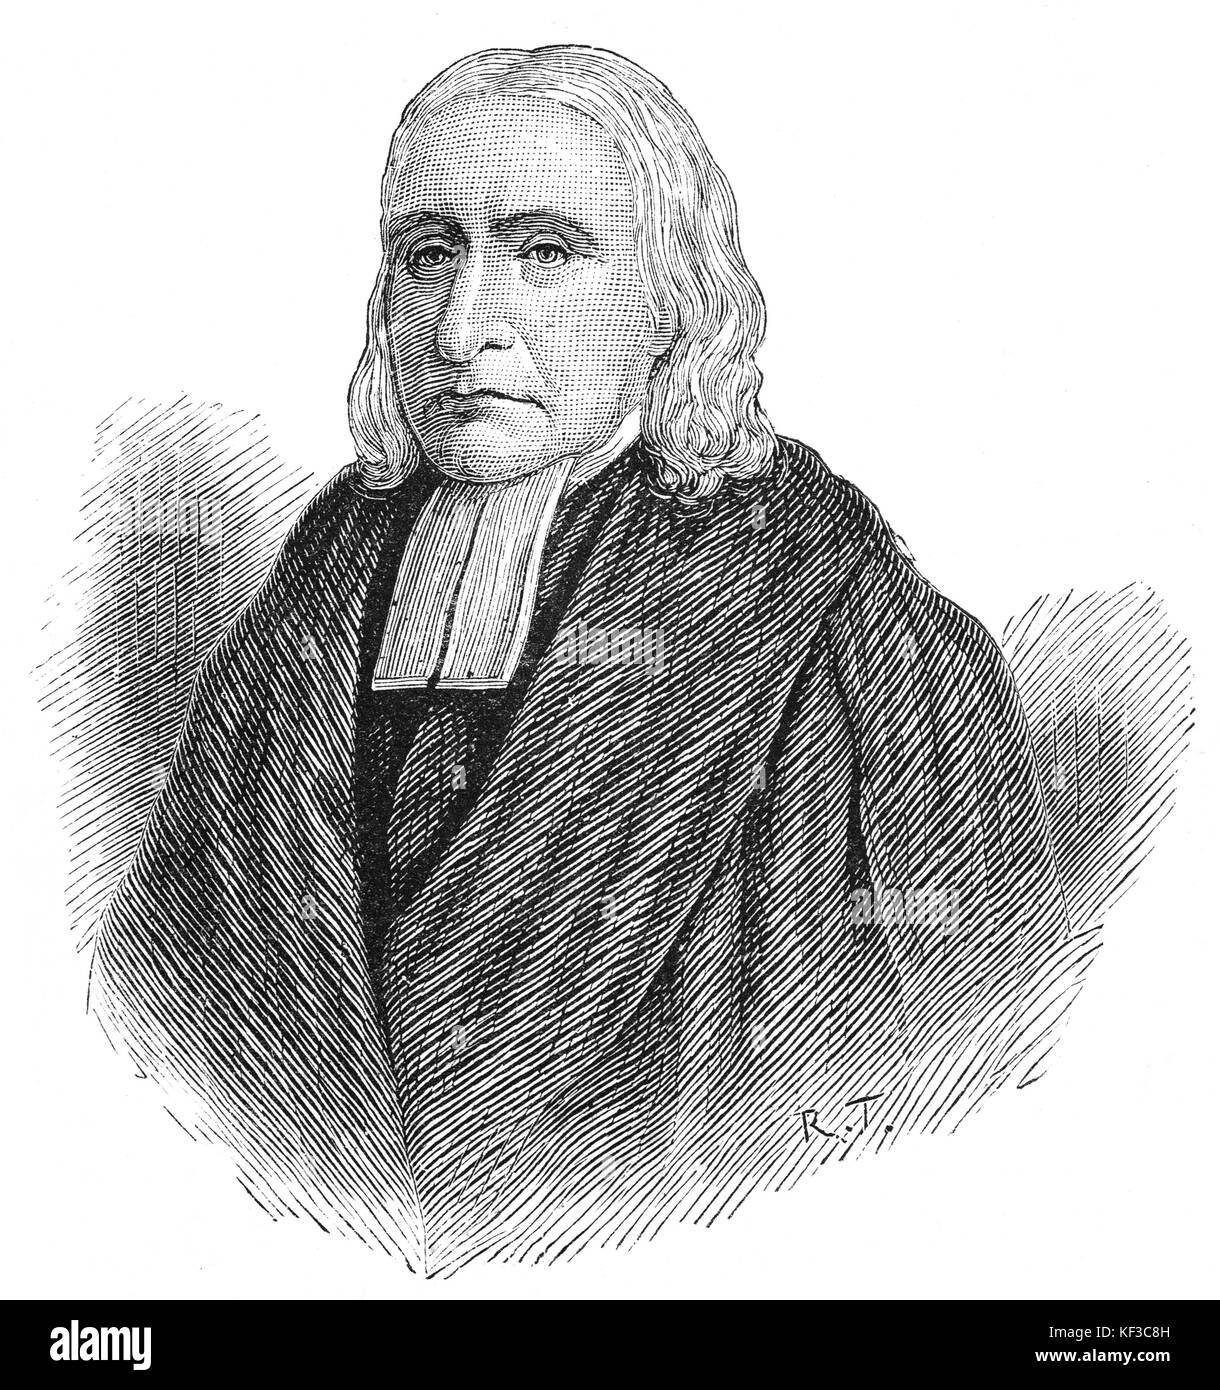 1890: Das Porträt von Daniel Rowland (1711 - 1790) war einer der führenden Führer der walisisch-calvinistischen Methodisten-Wiederbelebung. Er war als Prediger bekannt und machte Llangeitho, Ceredigion zu einem Zentrum für calvinistischen Methodismus in Mittelwales. Stockfoto